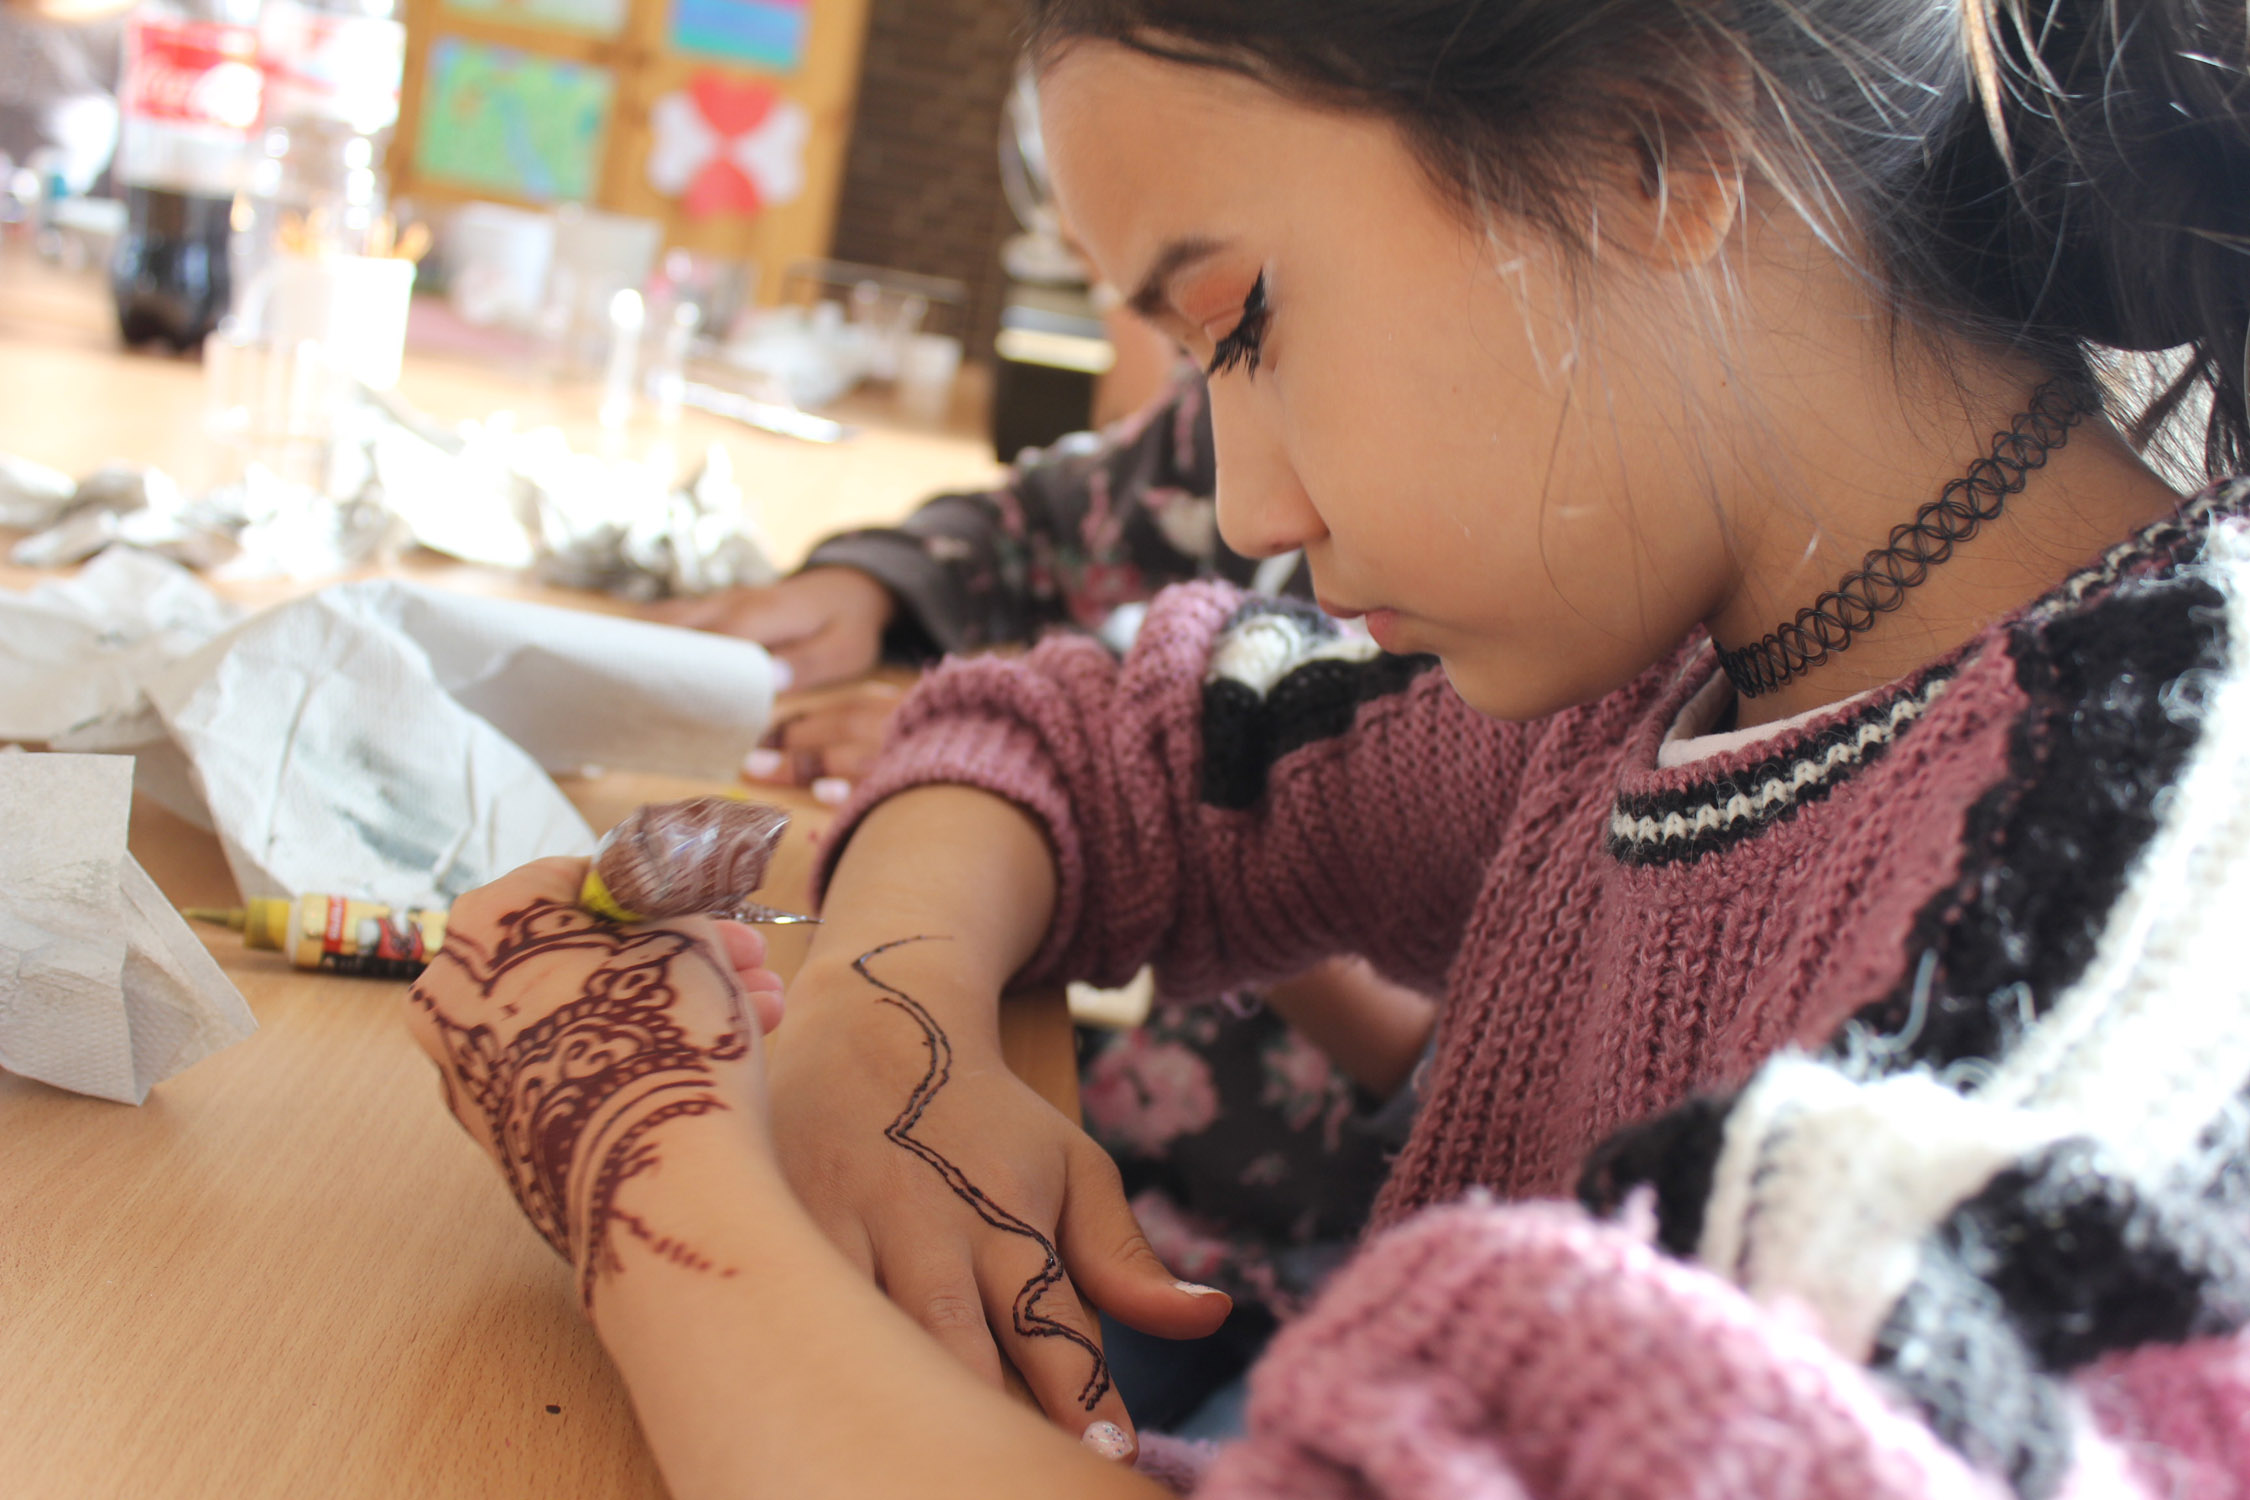 Bemalung mit Henna im Projekt Mädchen.Machen.Mut von Save the Children